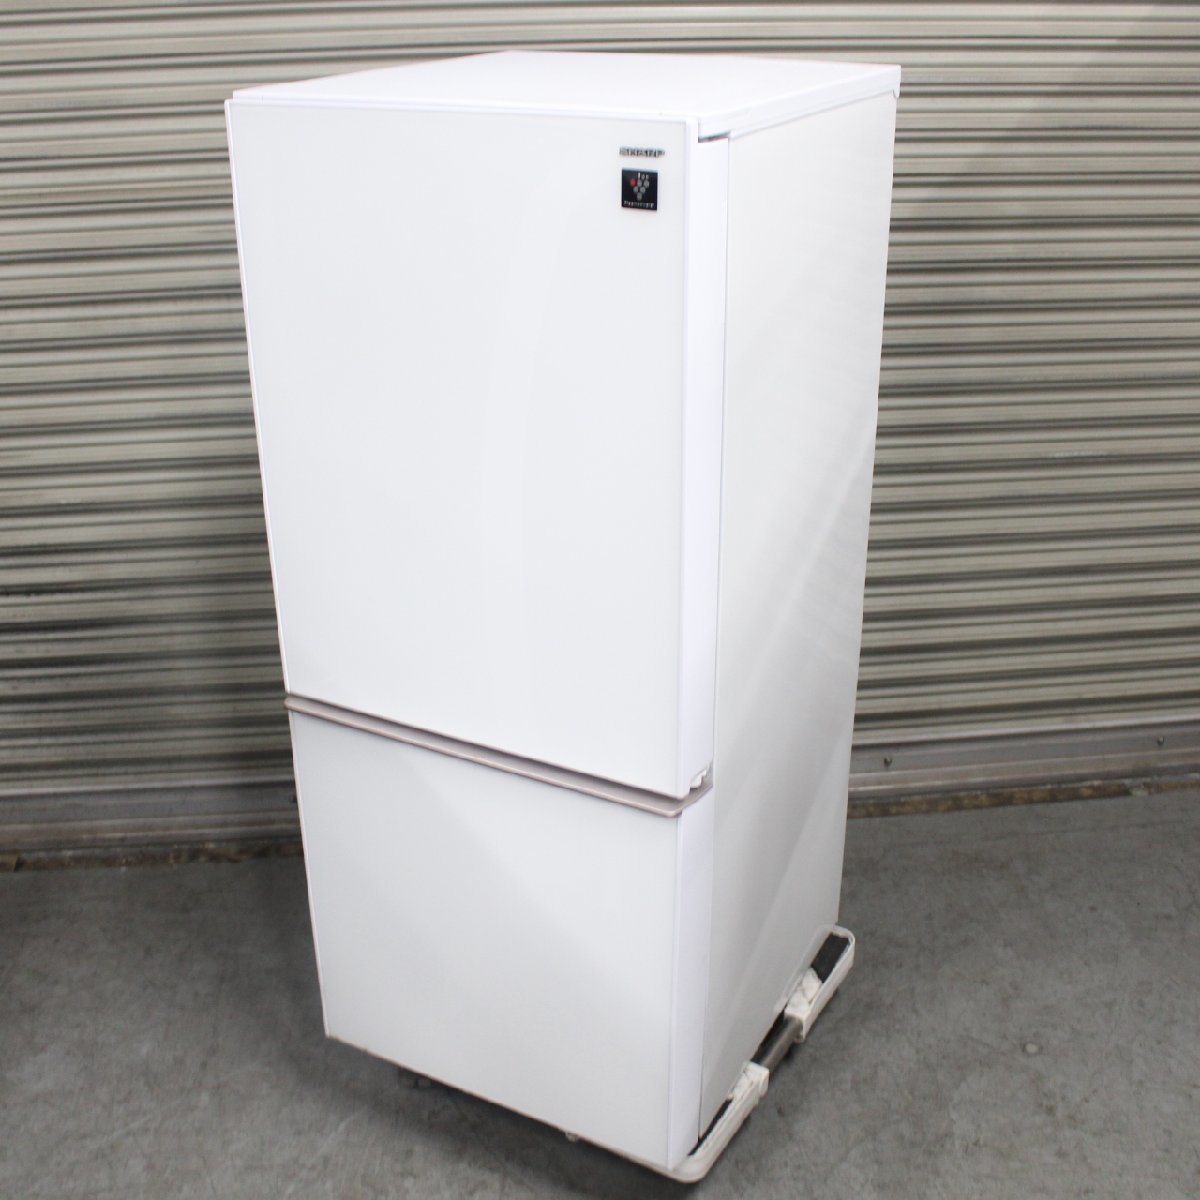 東京都渋谷区にて シャープ 冷蔵庫 SJ-GD14E-W 2018年製 を出張買取させて頂きました。